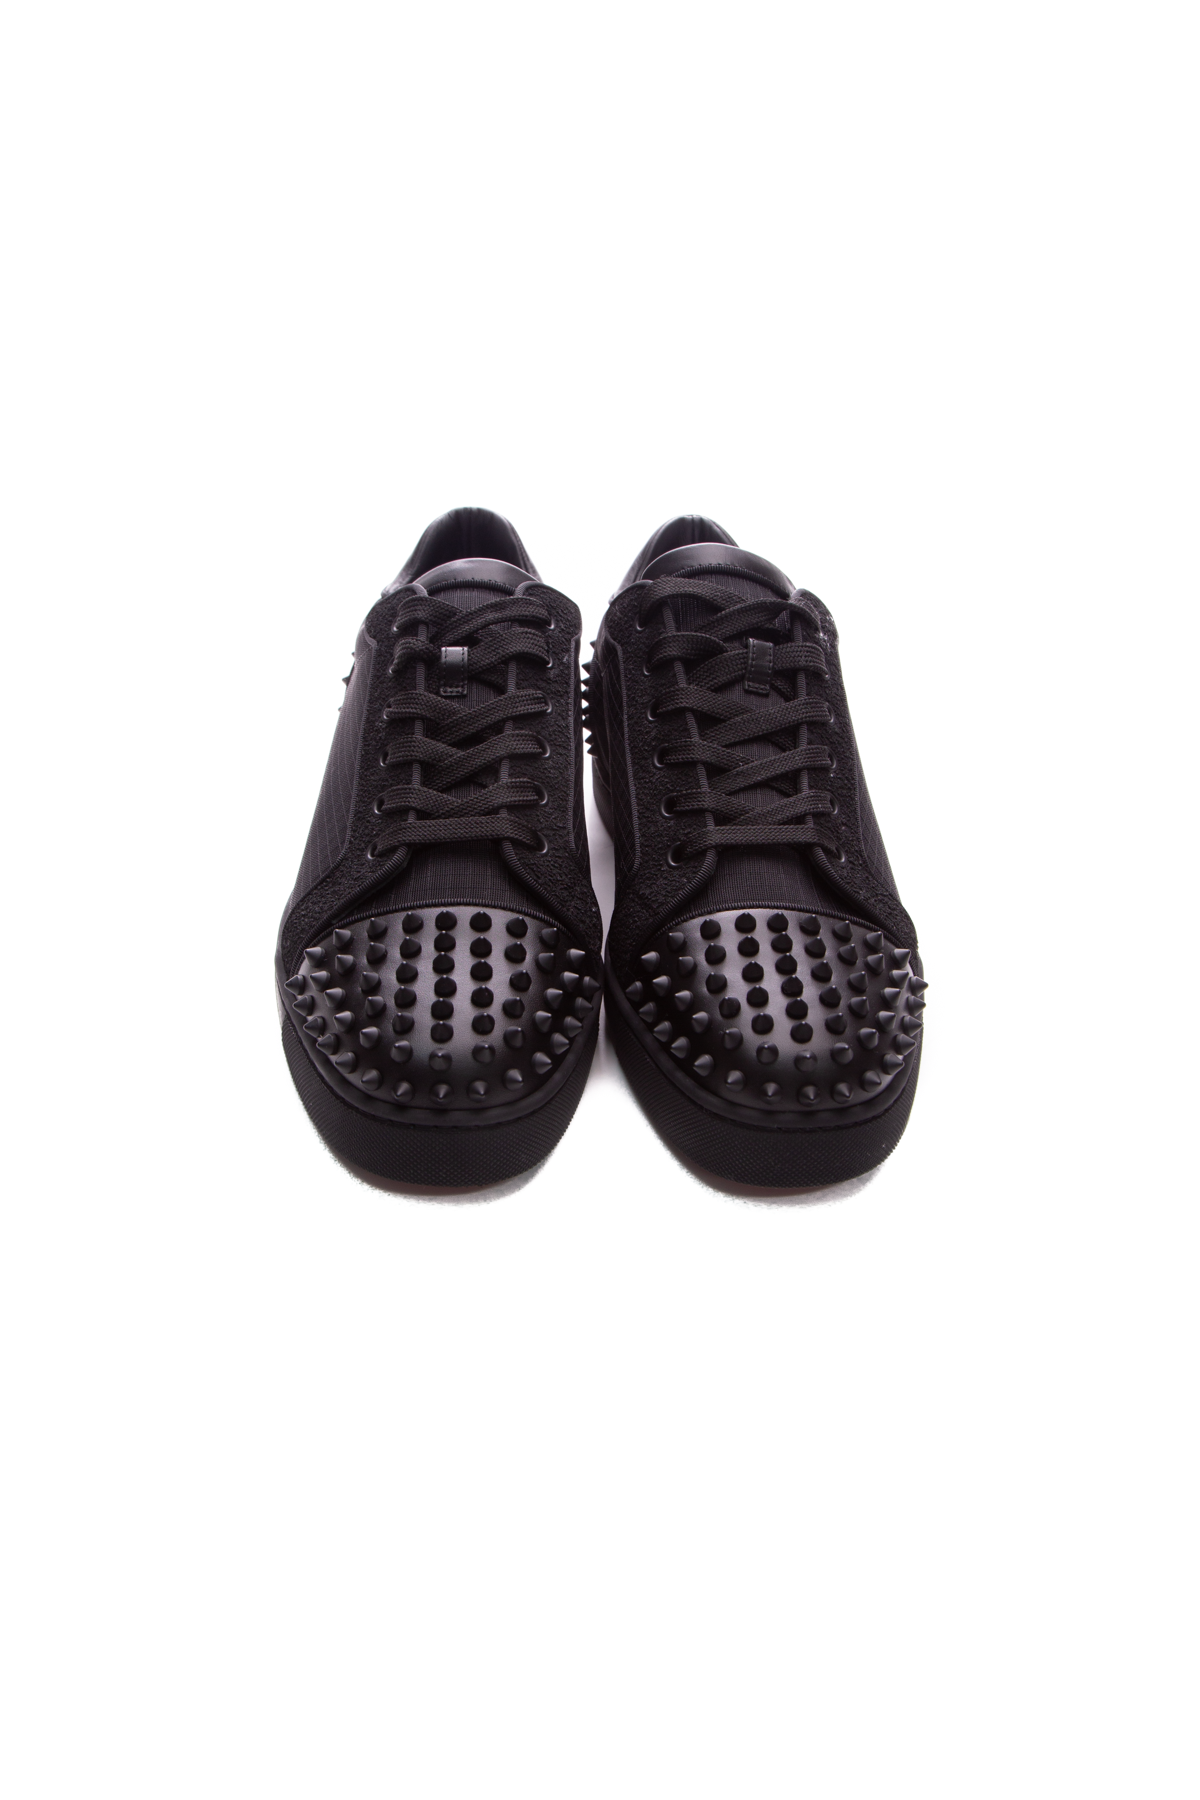 Louboutin Black Seavaste 2 Orlato Sneaker